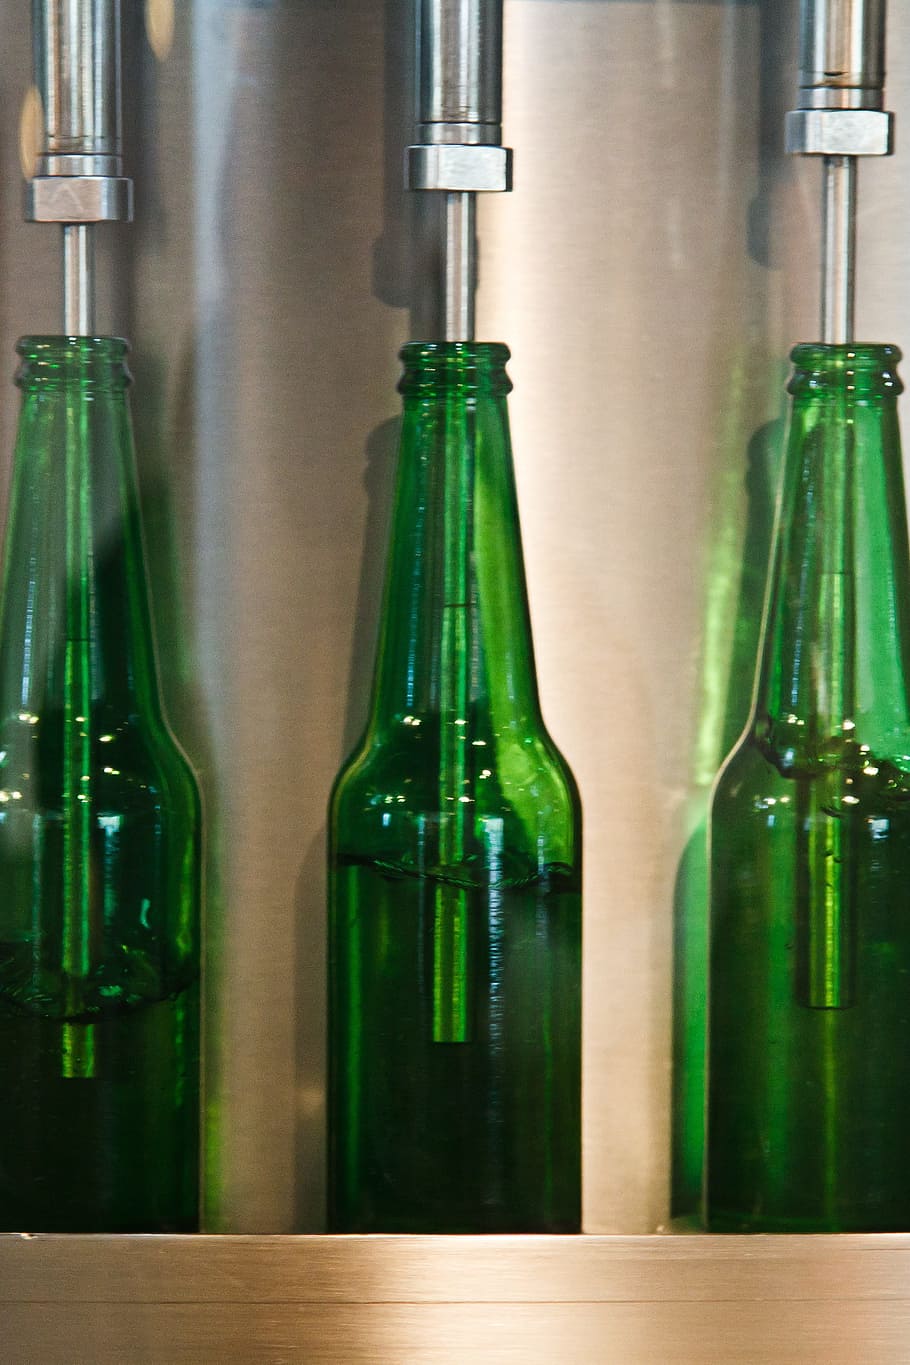 three green glass bottles, Beer, Beverage, Bottling, brewery